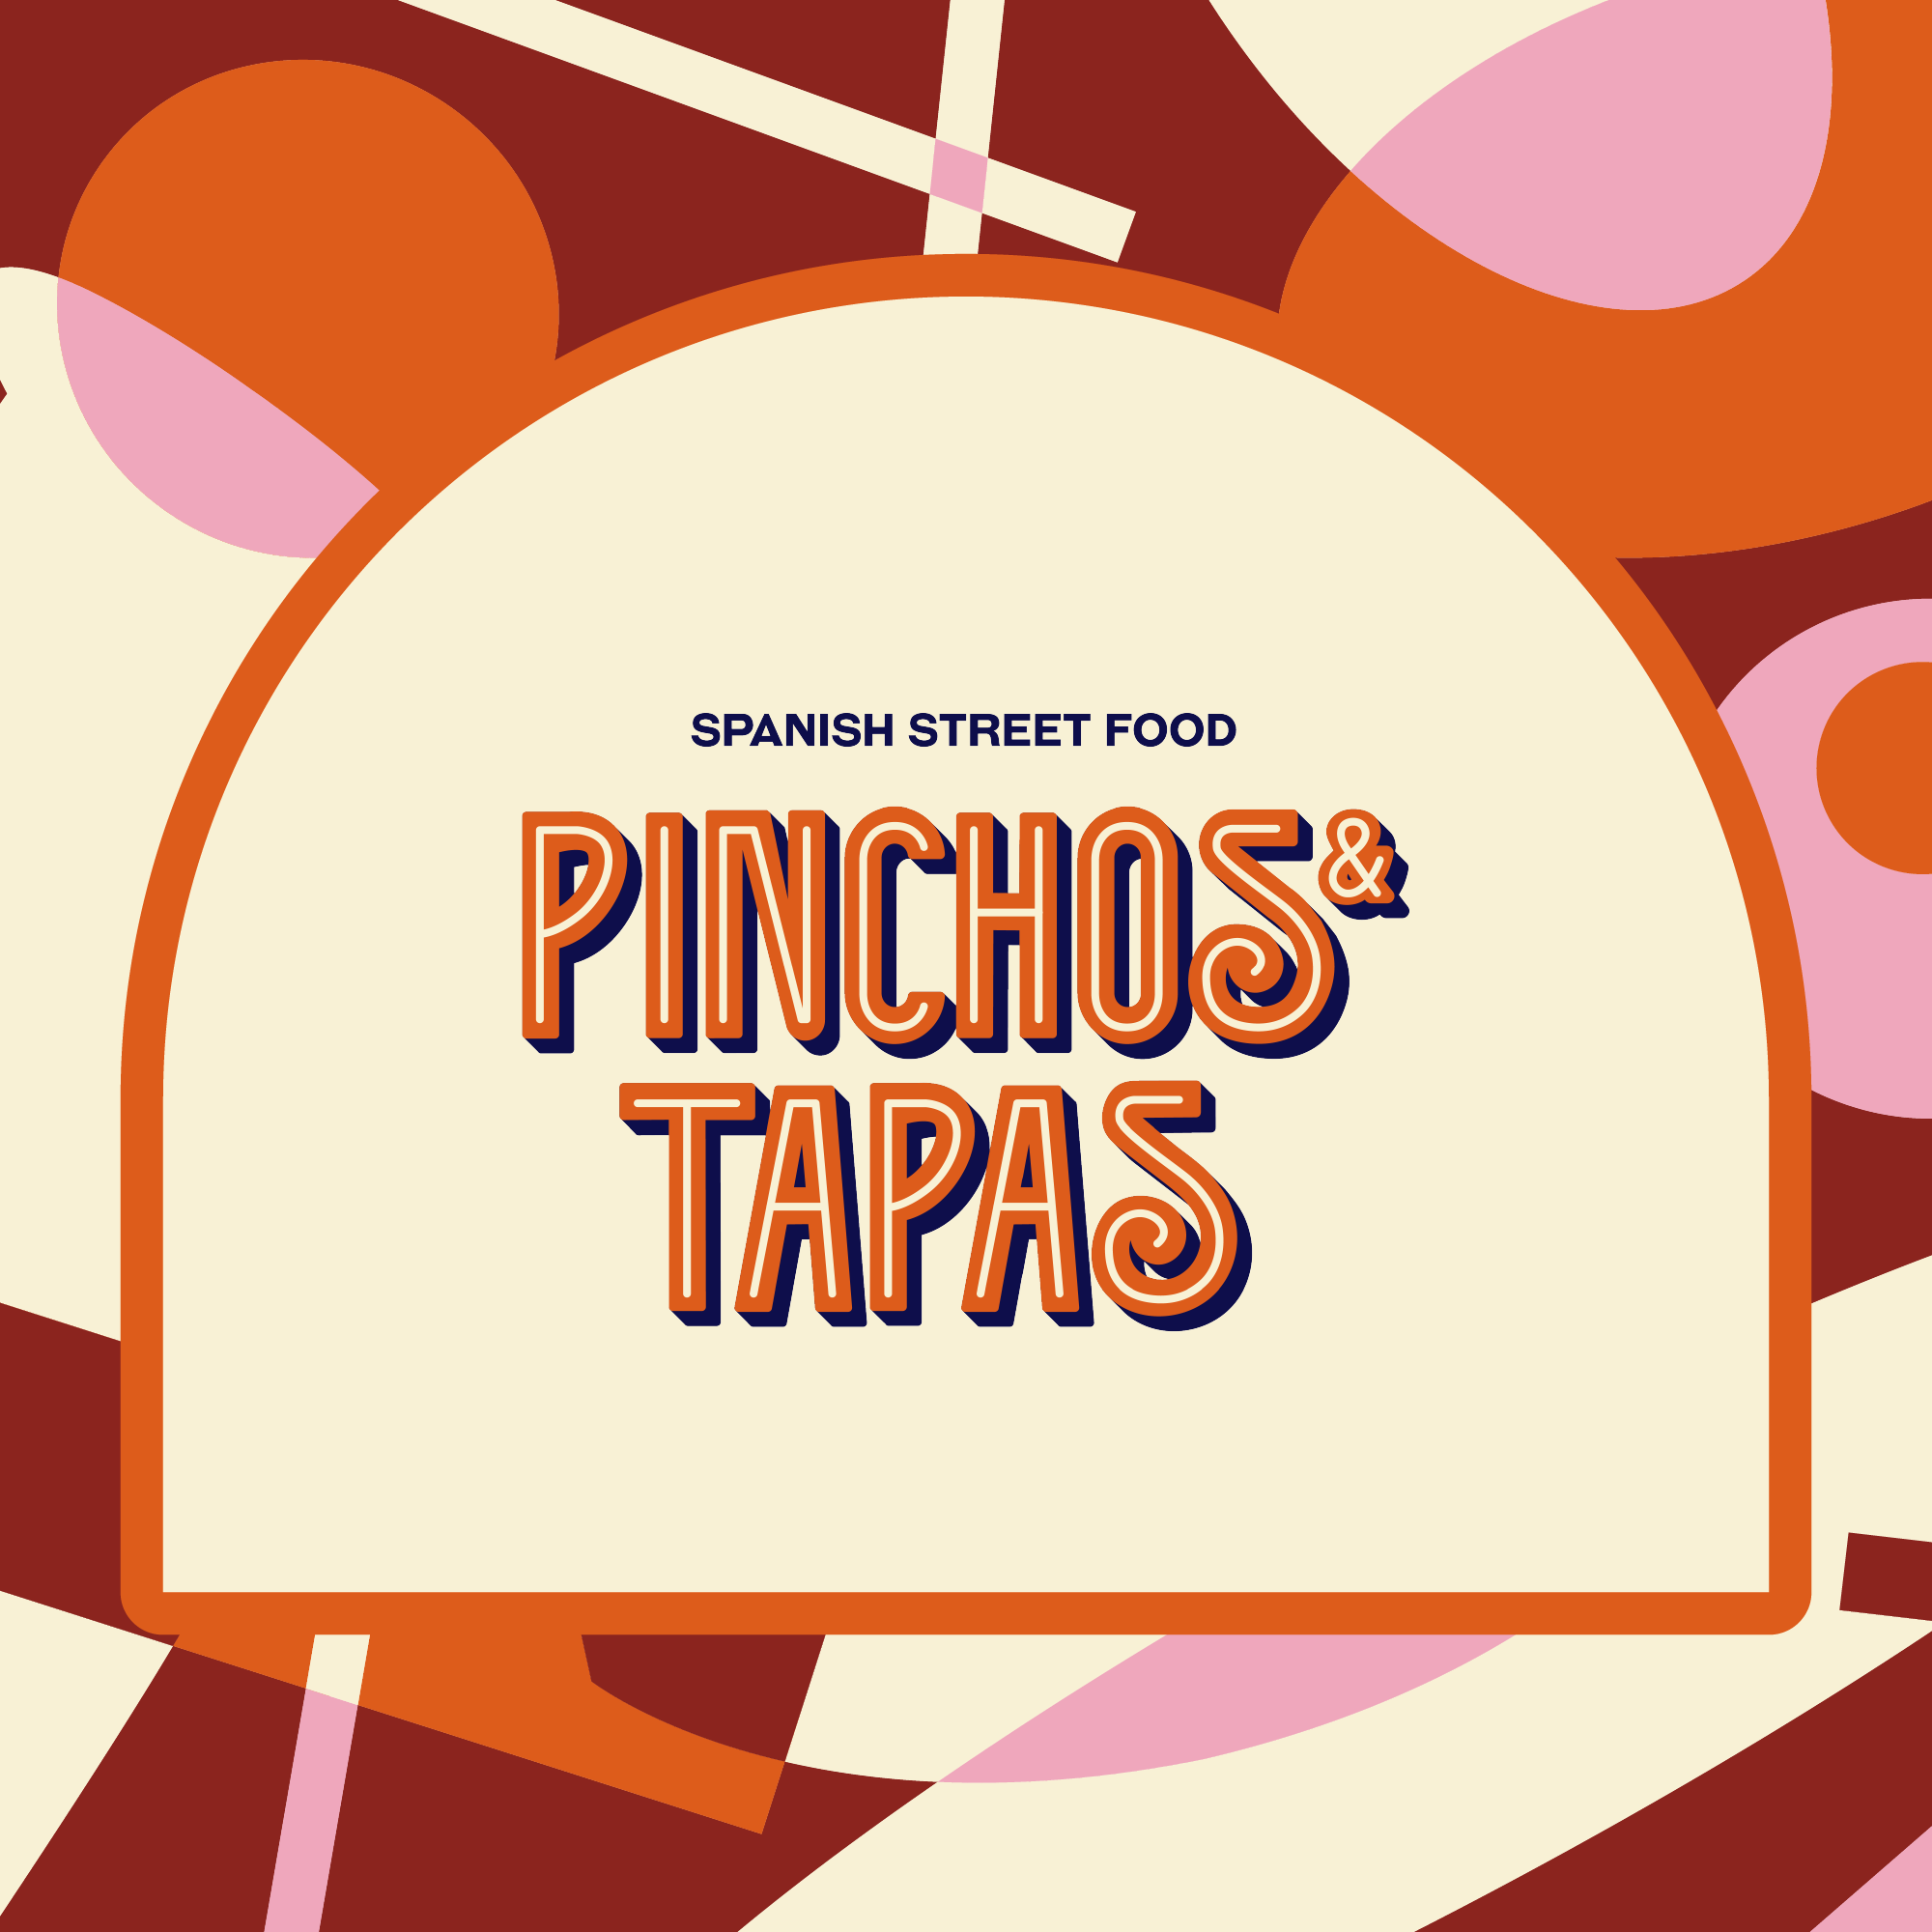 PINCHOS & TAPAS